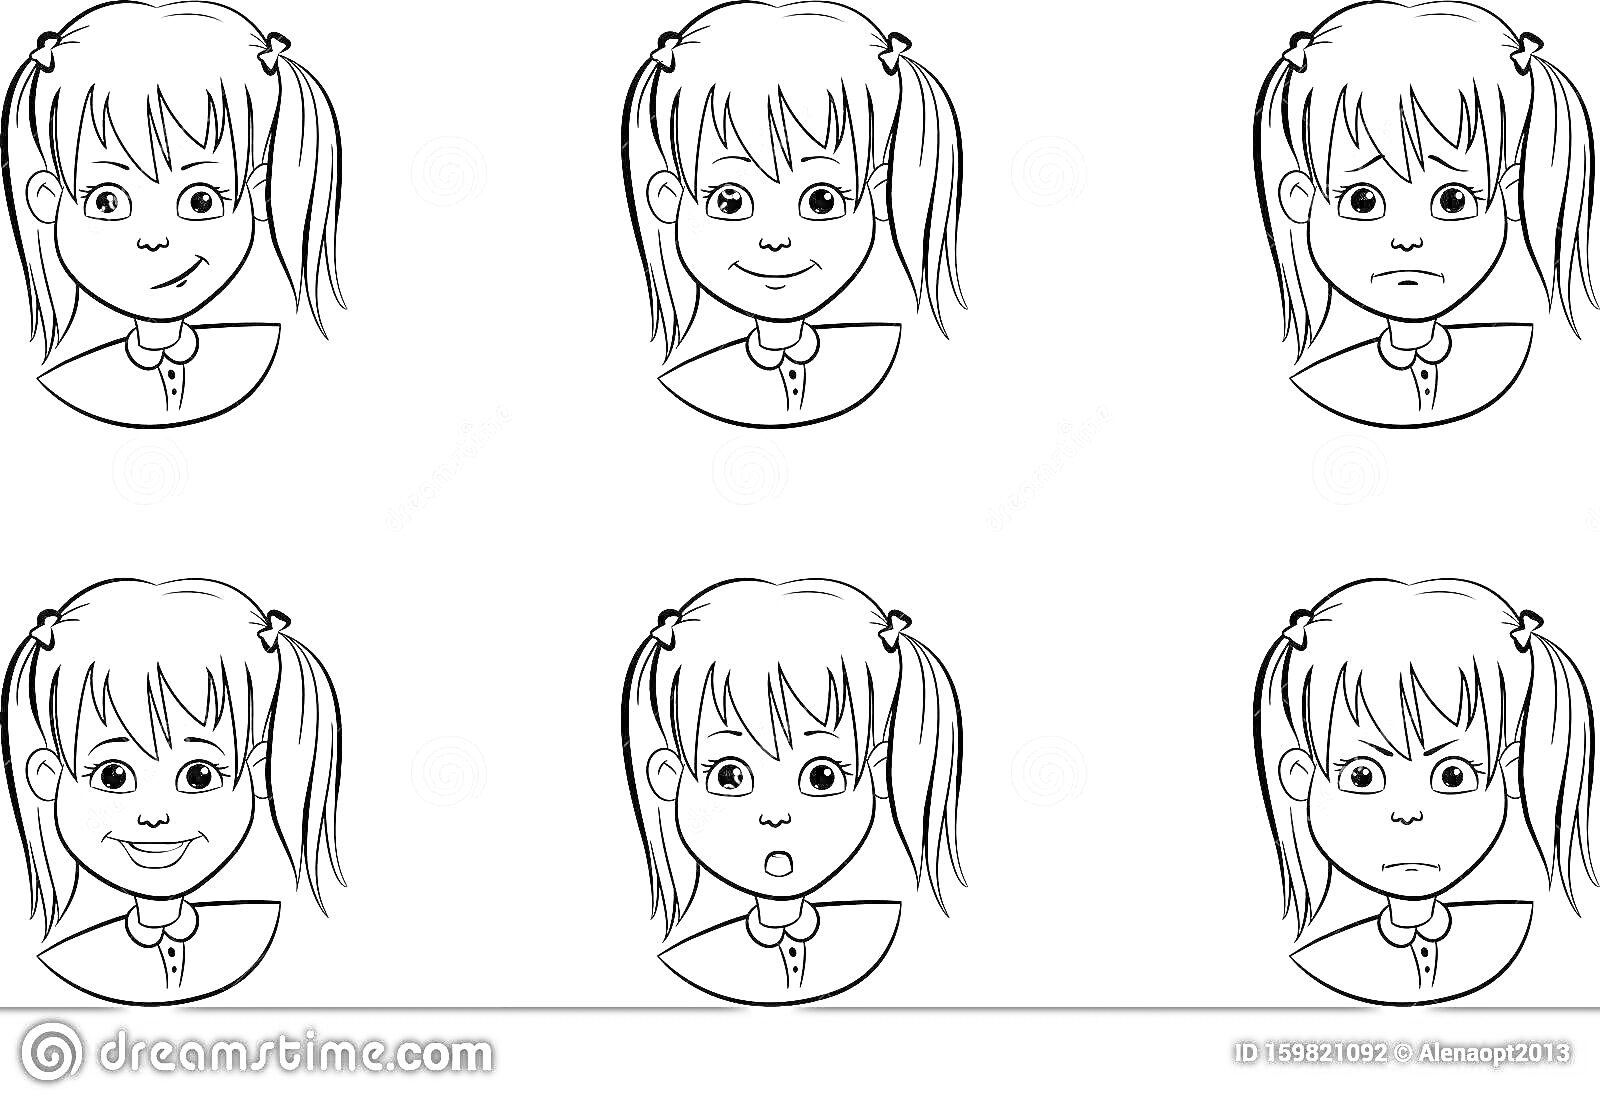 Раскраска Девочка с двумя хвостиками, показывающая разные эмоции (радость, нейтральное выражение лица, грусть, смущение, удивление, страх)